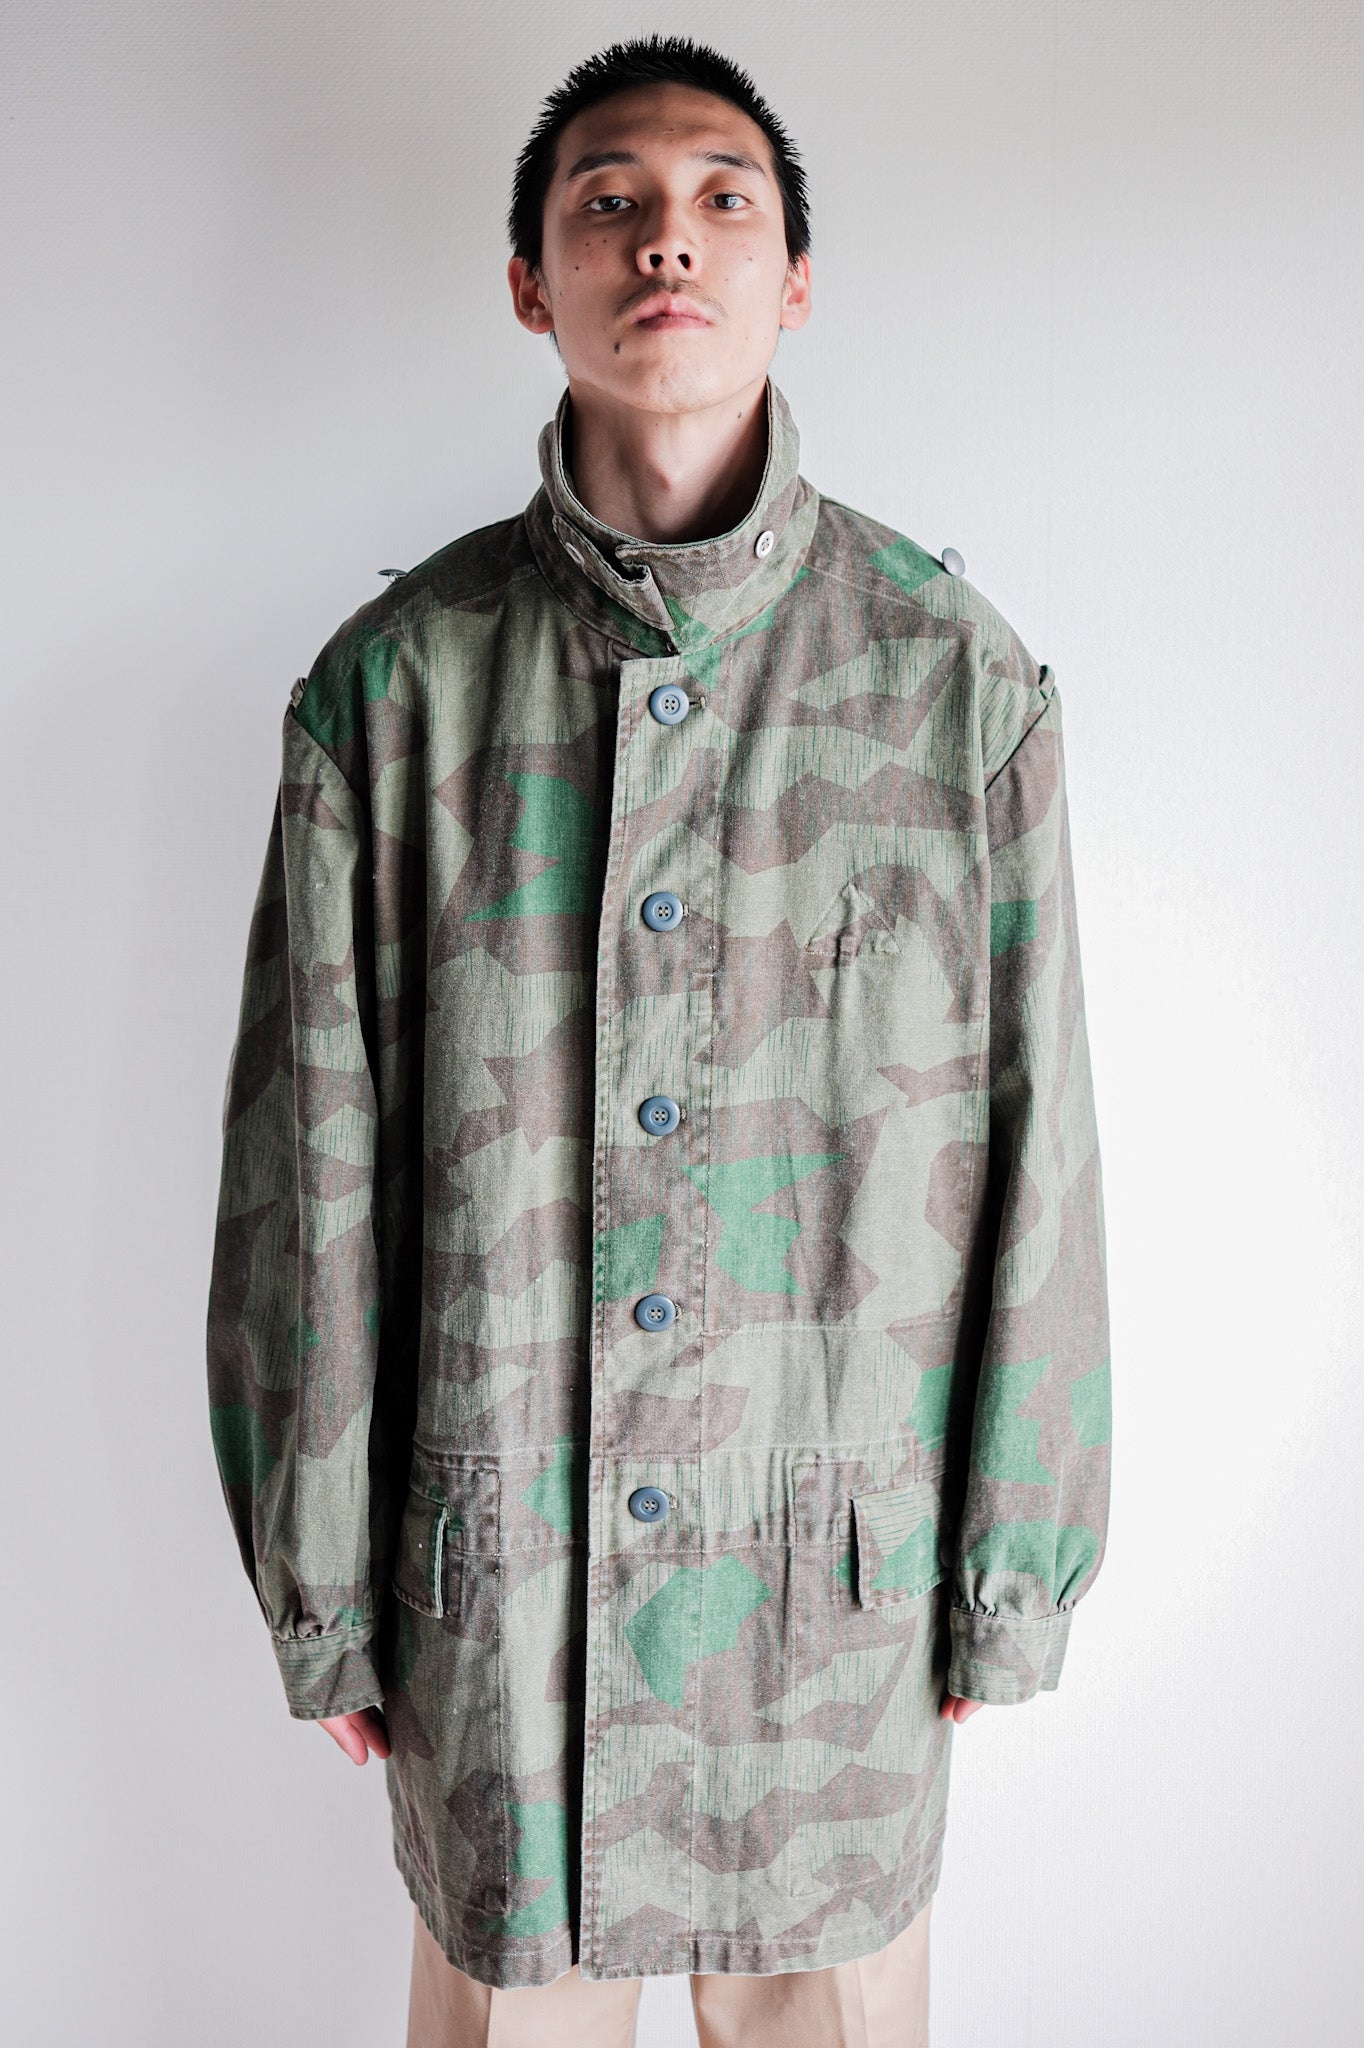 [〜70年代]德國軍隊分裂式偽裝繖形夾克“繁殖”